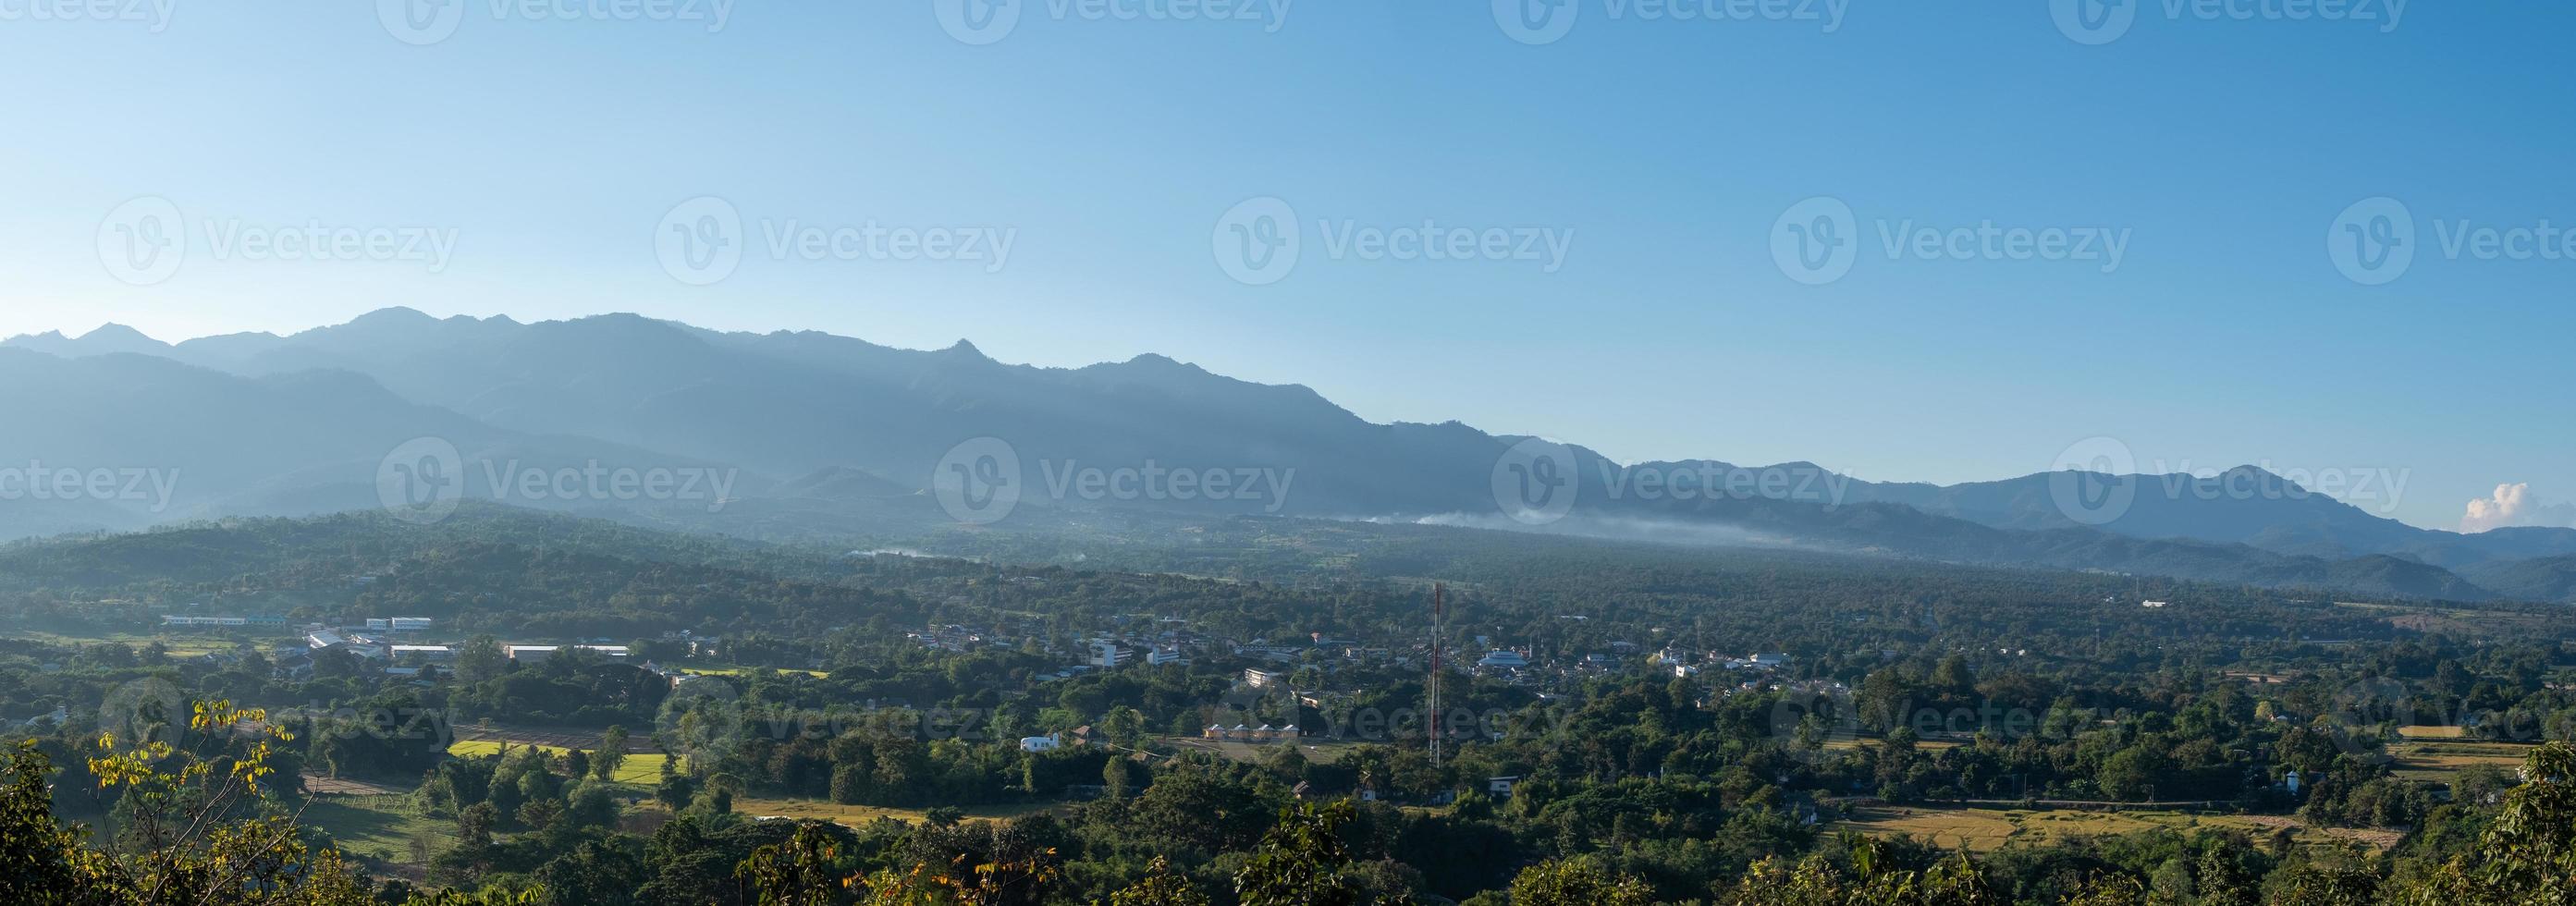 Panoramablick vom Aussichtspunkt auf die kleine Stadt, die in der Ebene zwischen den hohen Gebirgszügen liegt. foto